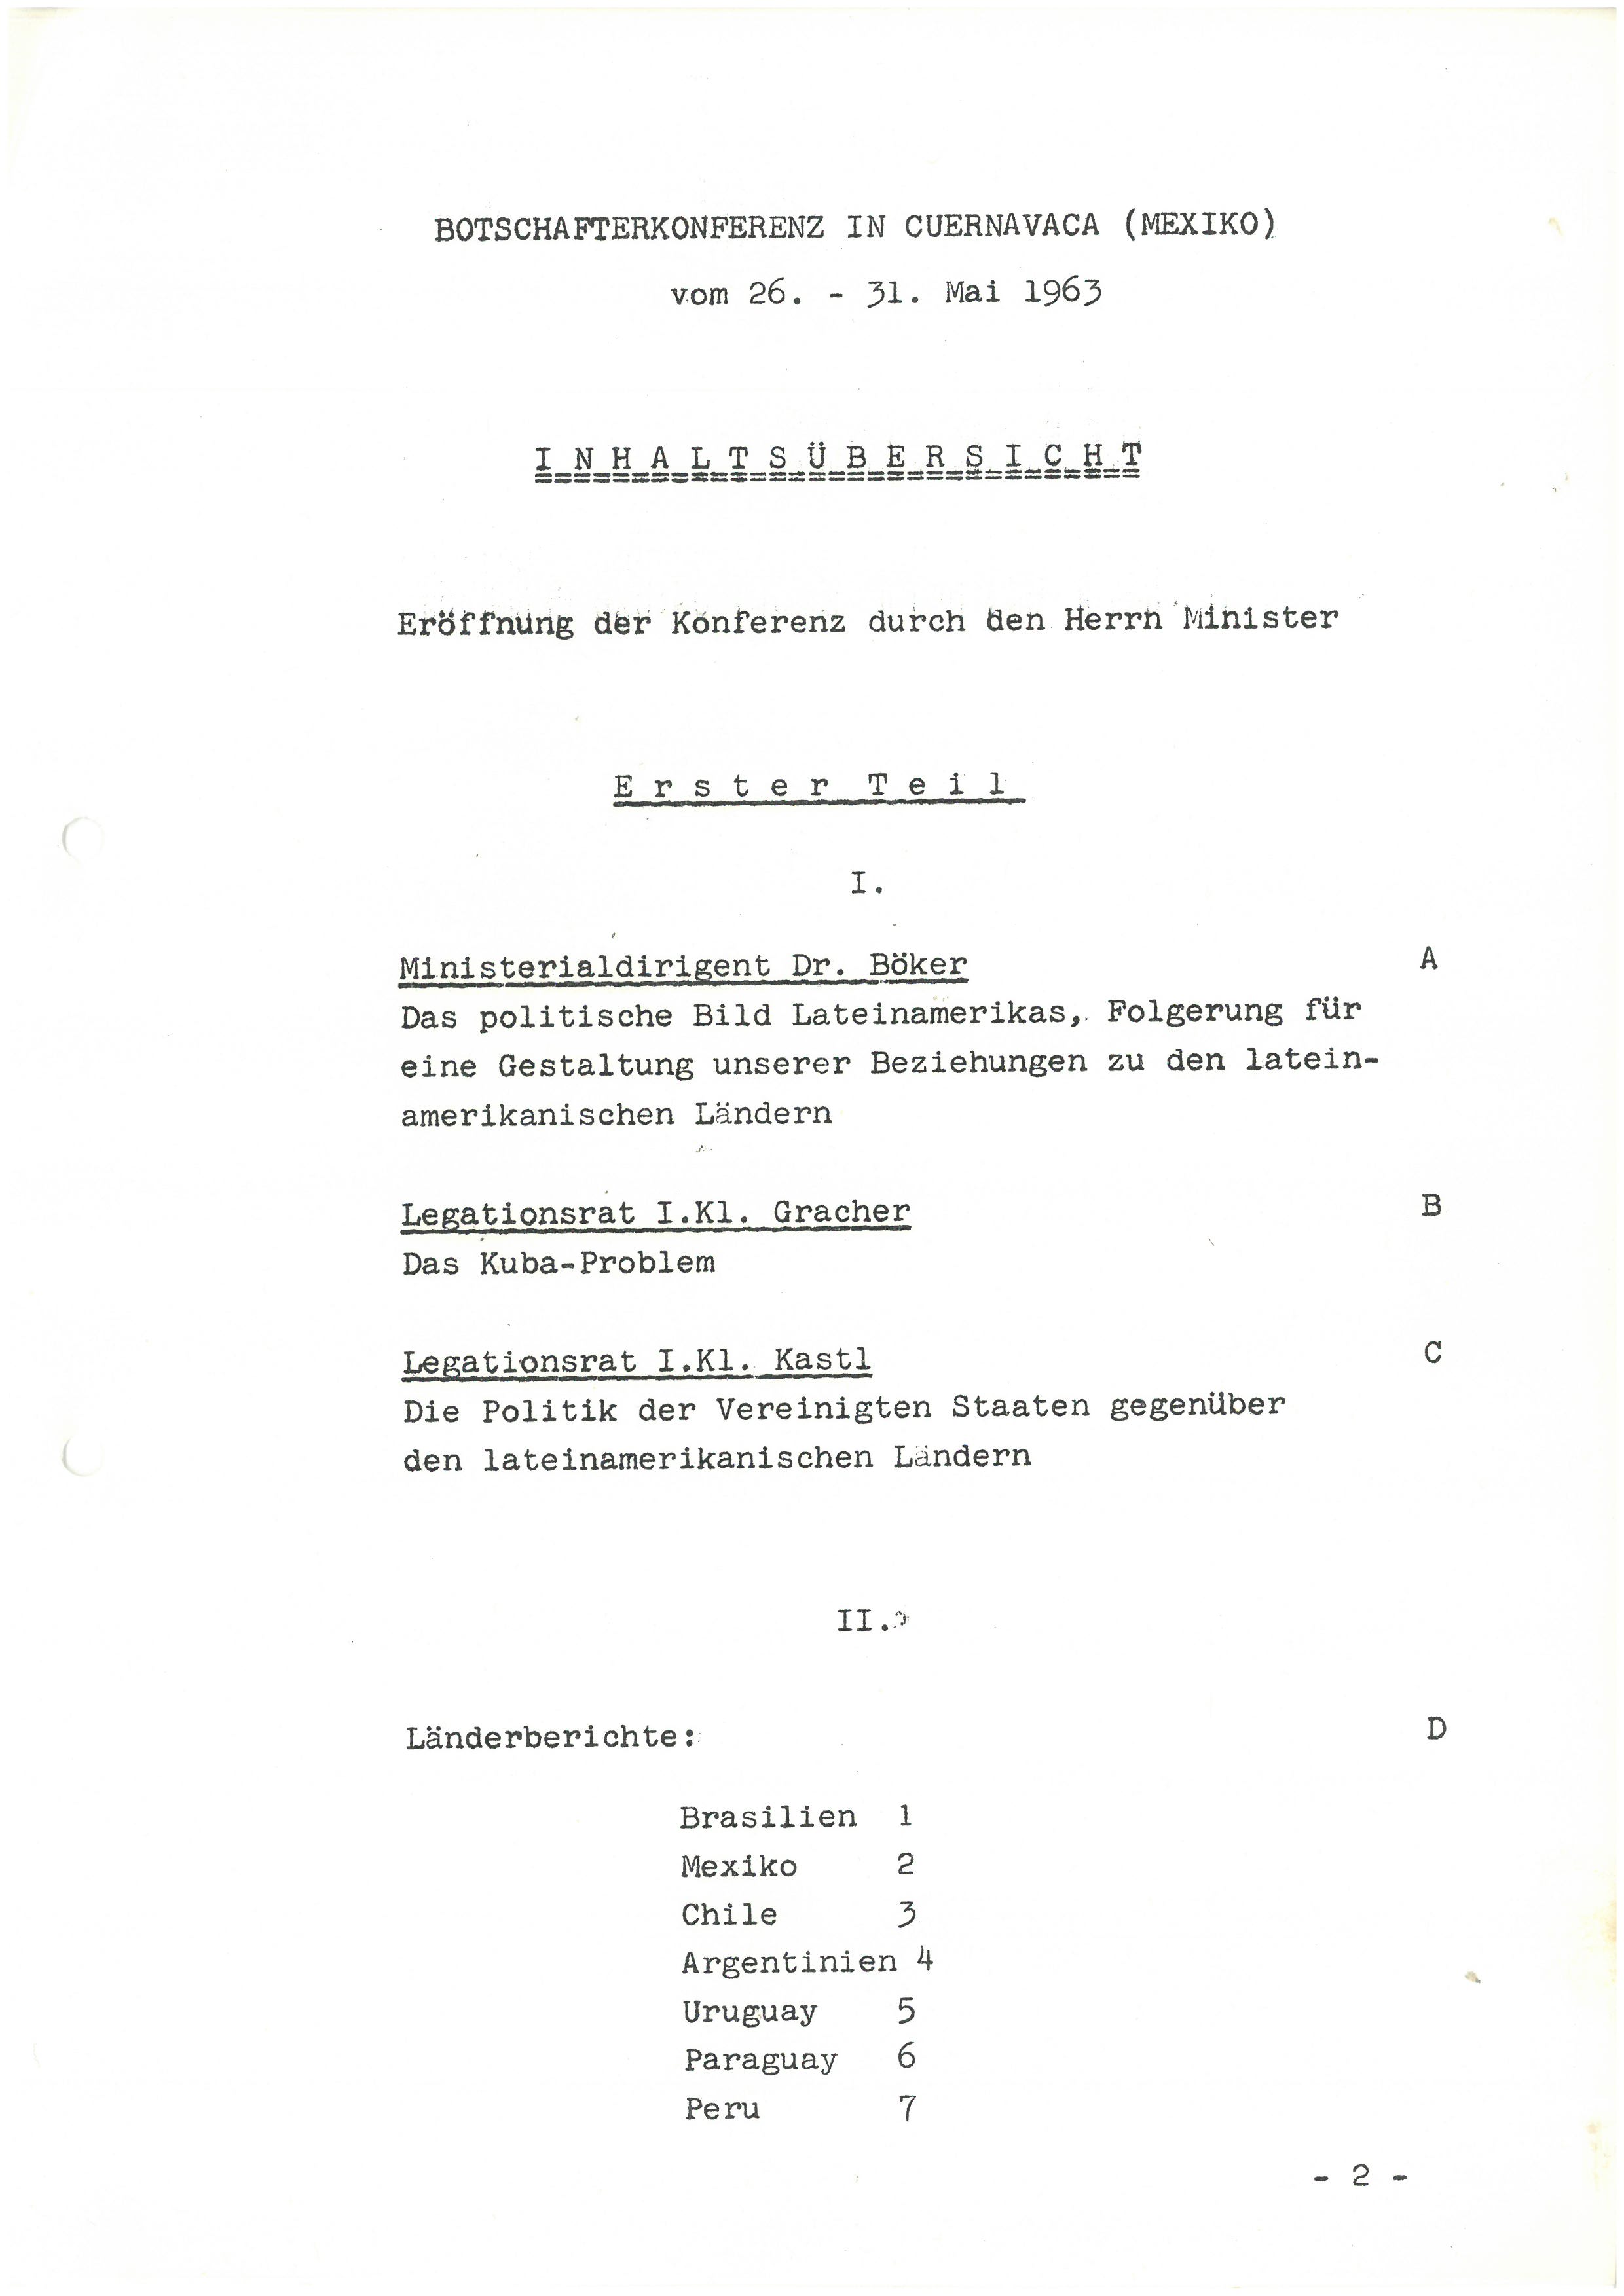 Dokument der Botschafterkonferenz in Cuernavaca (Mexiko) vom 26. bis 31. Mai 1963.